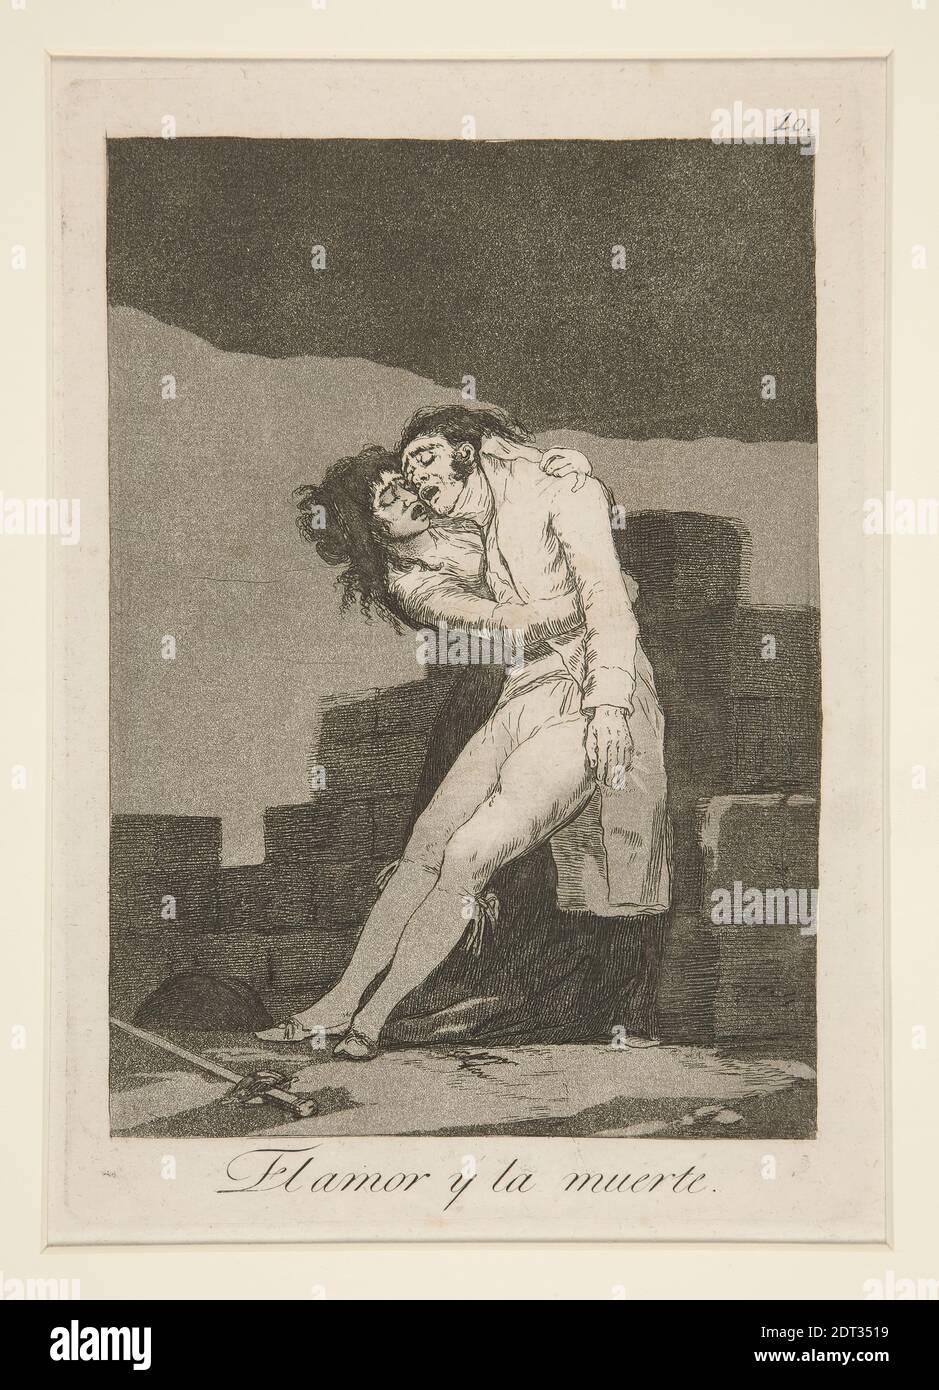 Artiste: Francisco Goya, espagnol, 1746–1828, El amor y la muerte (Amour et mort), pl. 10 de la série Los caprichos, Etching, burnished aquatint, et burin, platemark: 21.5 × 15.2 cm (8 7/16 × 6 in.), fabriqué en Espagne, espagnol, 18ème siècle, travaux sur papier - imprimés Banque D'Images